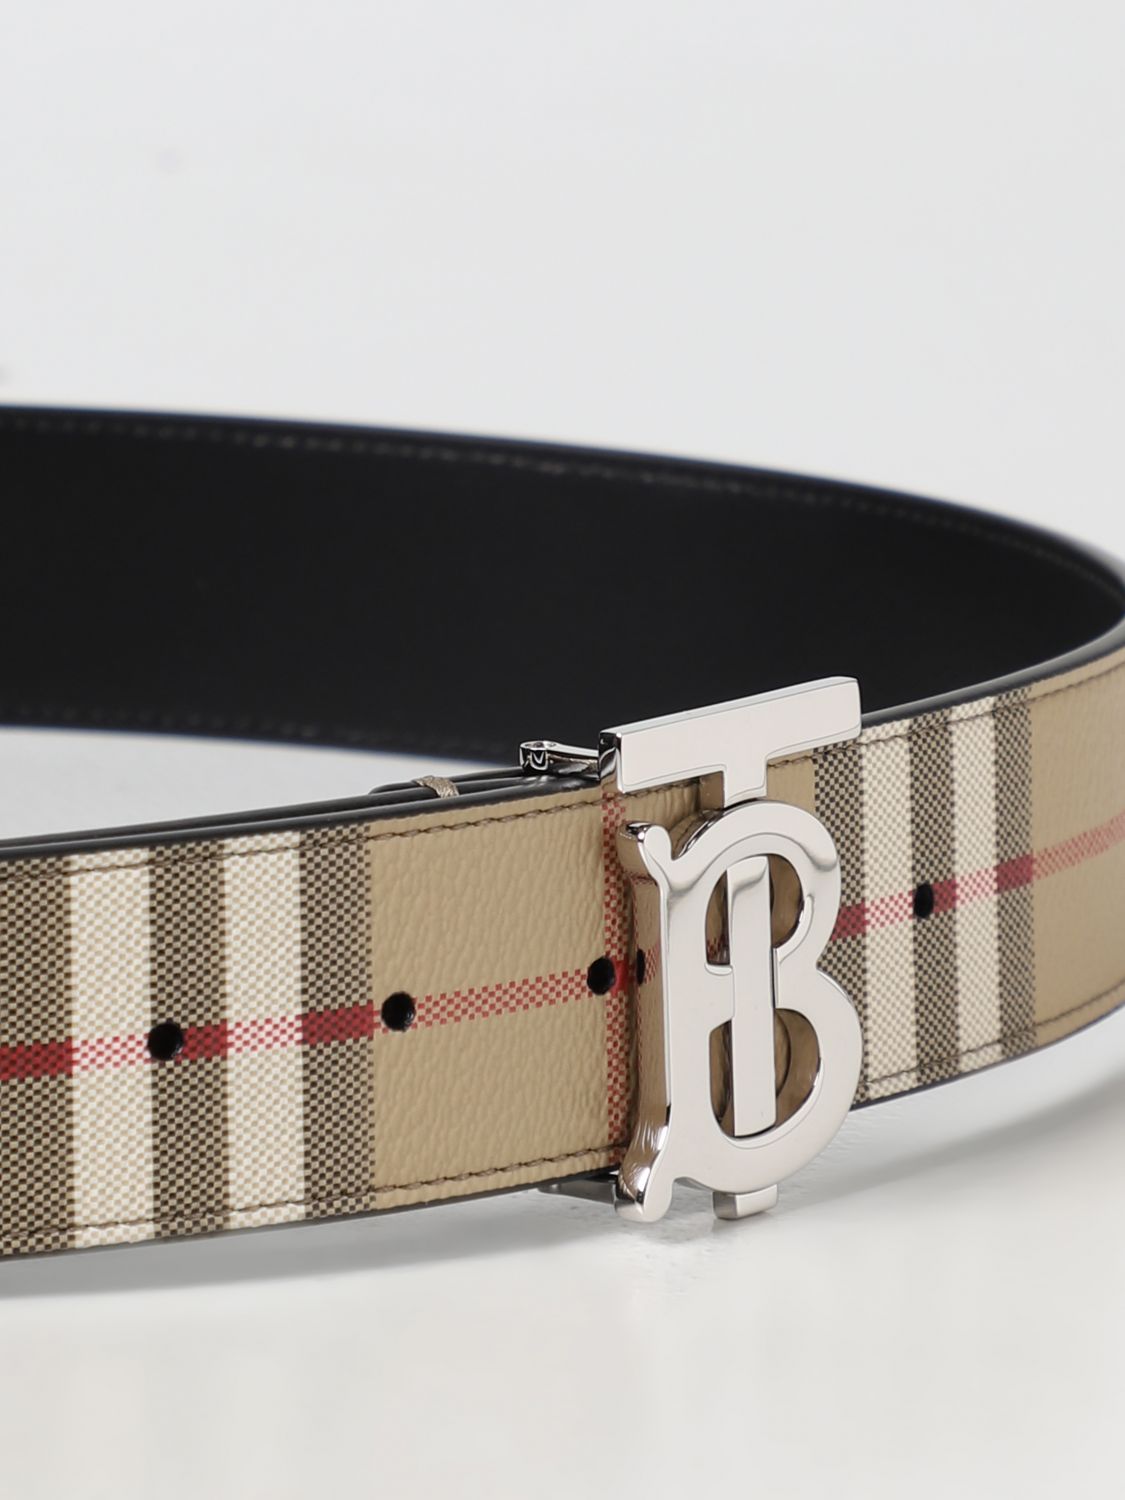 BURBERRY: Vintage Check belt in matt grain coated fabric - Beige